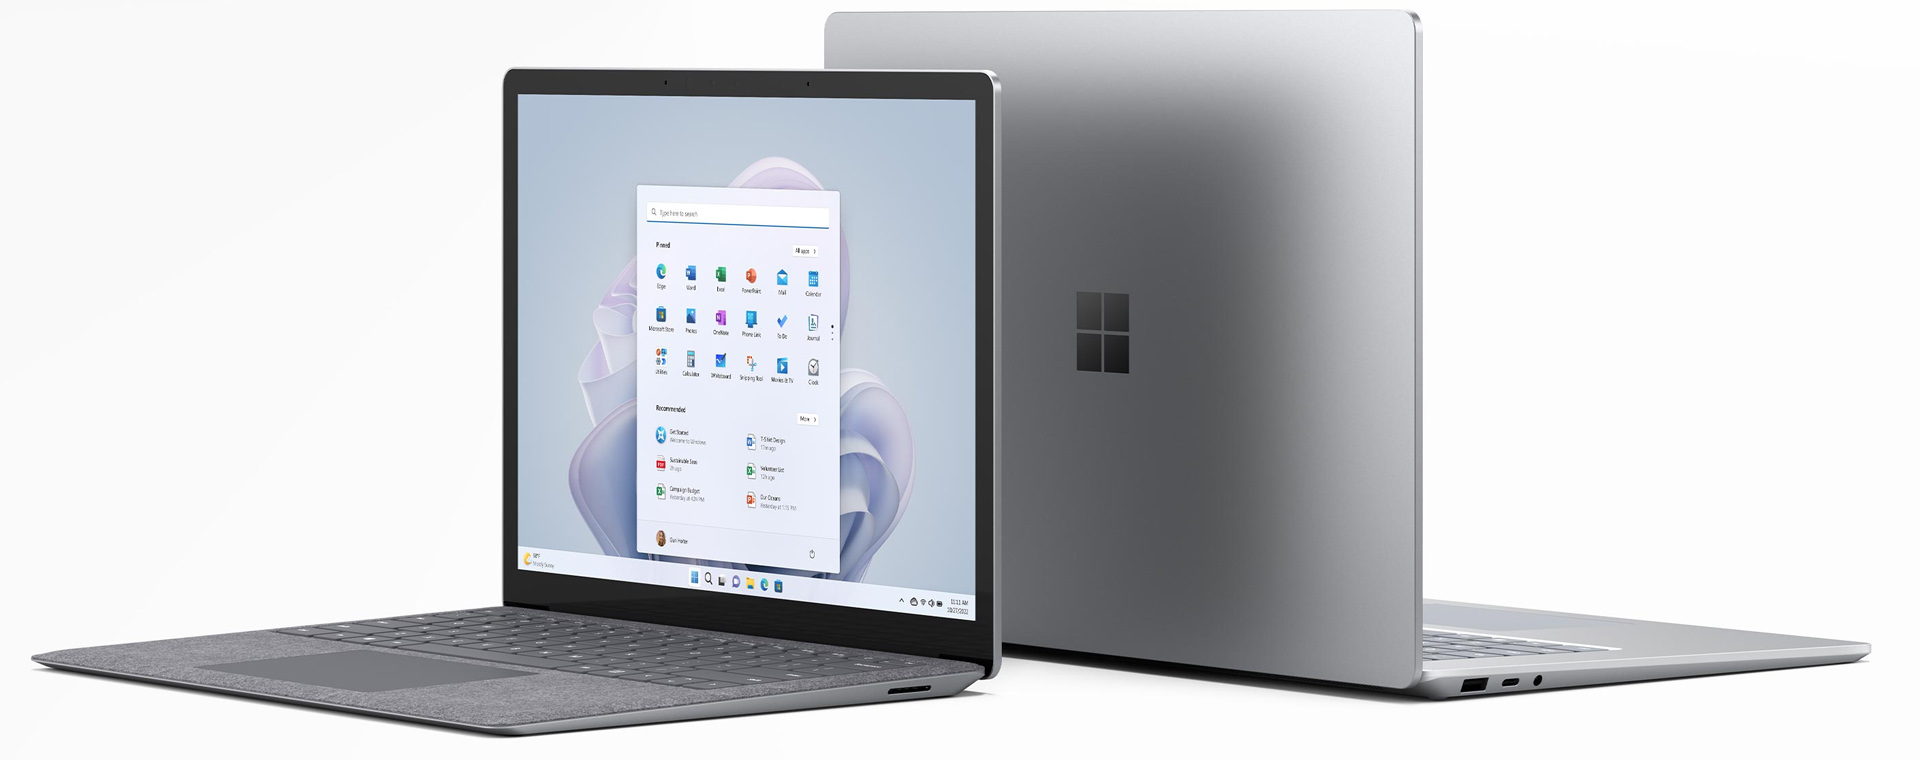 سرفیس لپ تاپ ۵ – Surface Laptop 5 – 15 inch / Core i7 / RAM 8GB / 256GB SSD